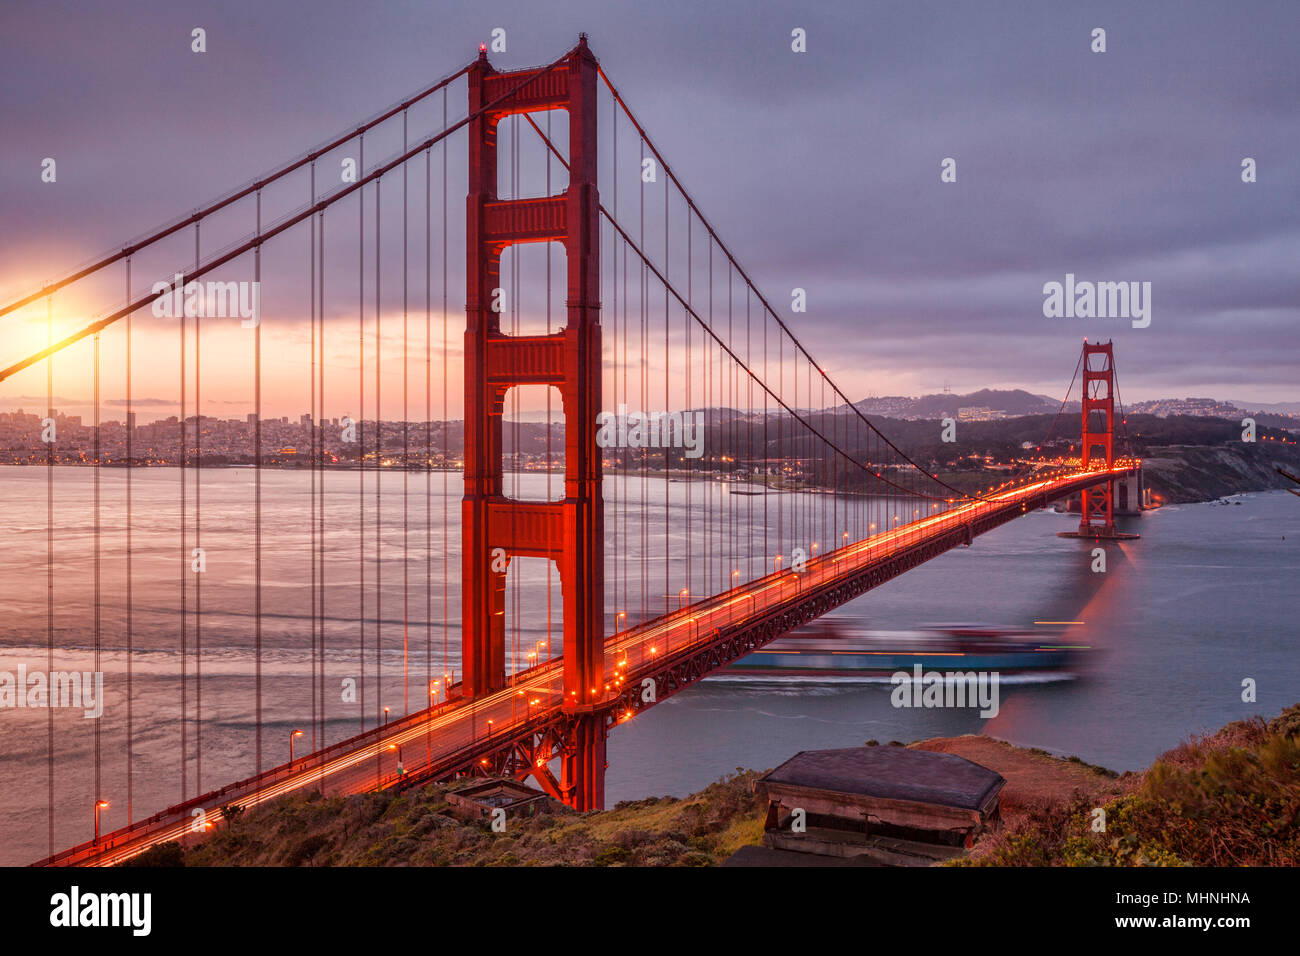 Le Golden Gate Bridge, San Francisco, de la batterie Spencer à l'aube, à la circulation sur le pont et un porte-conteneurs de la voile de la baie. Banque D'Images